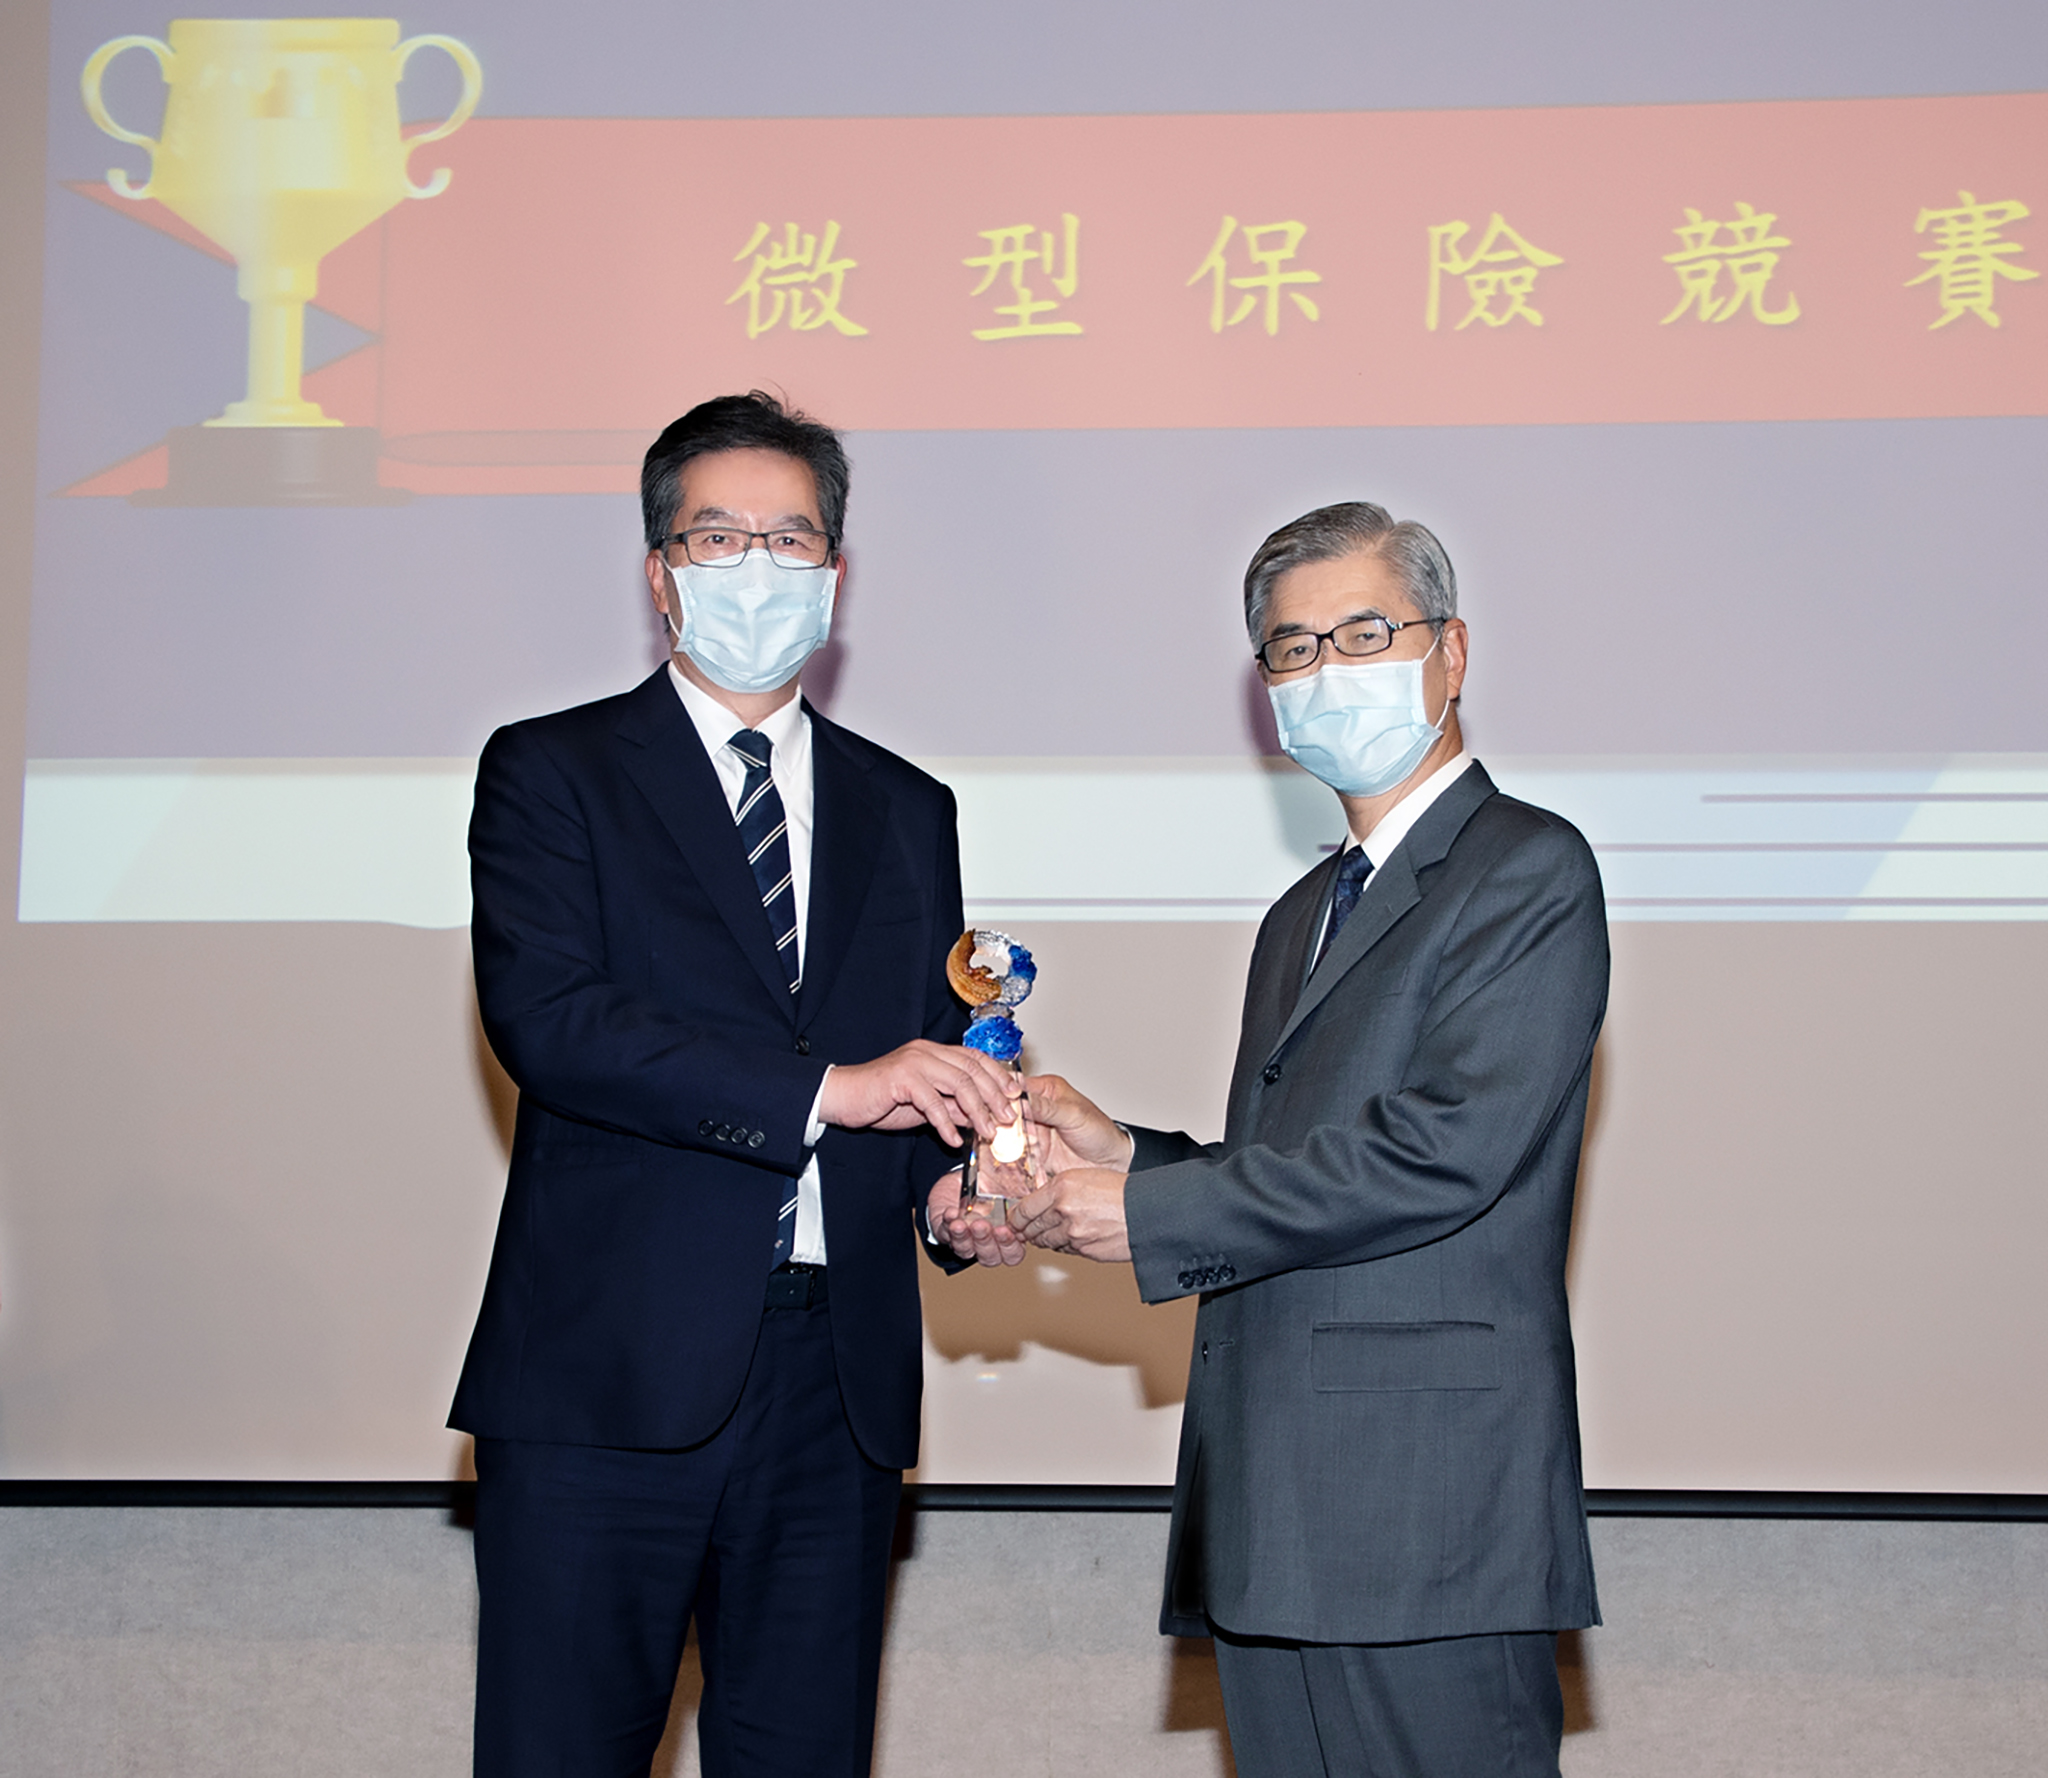 永達保經獲得2021年微型保險競賽-保險輔助人組第一名，由金融監督管理委員會主委黃天牧（圖右）頒獎，永達陳慶鴻總經理（圖左）代表受獎。